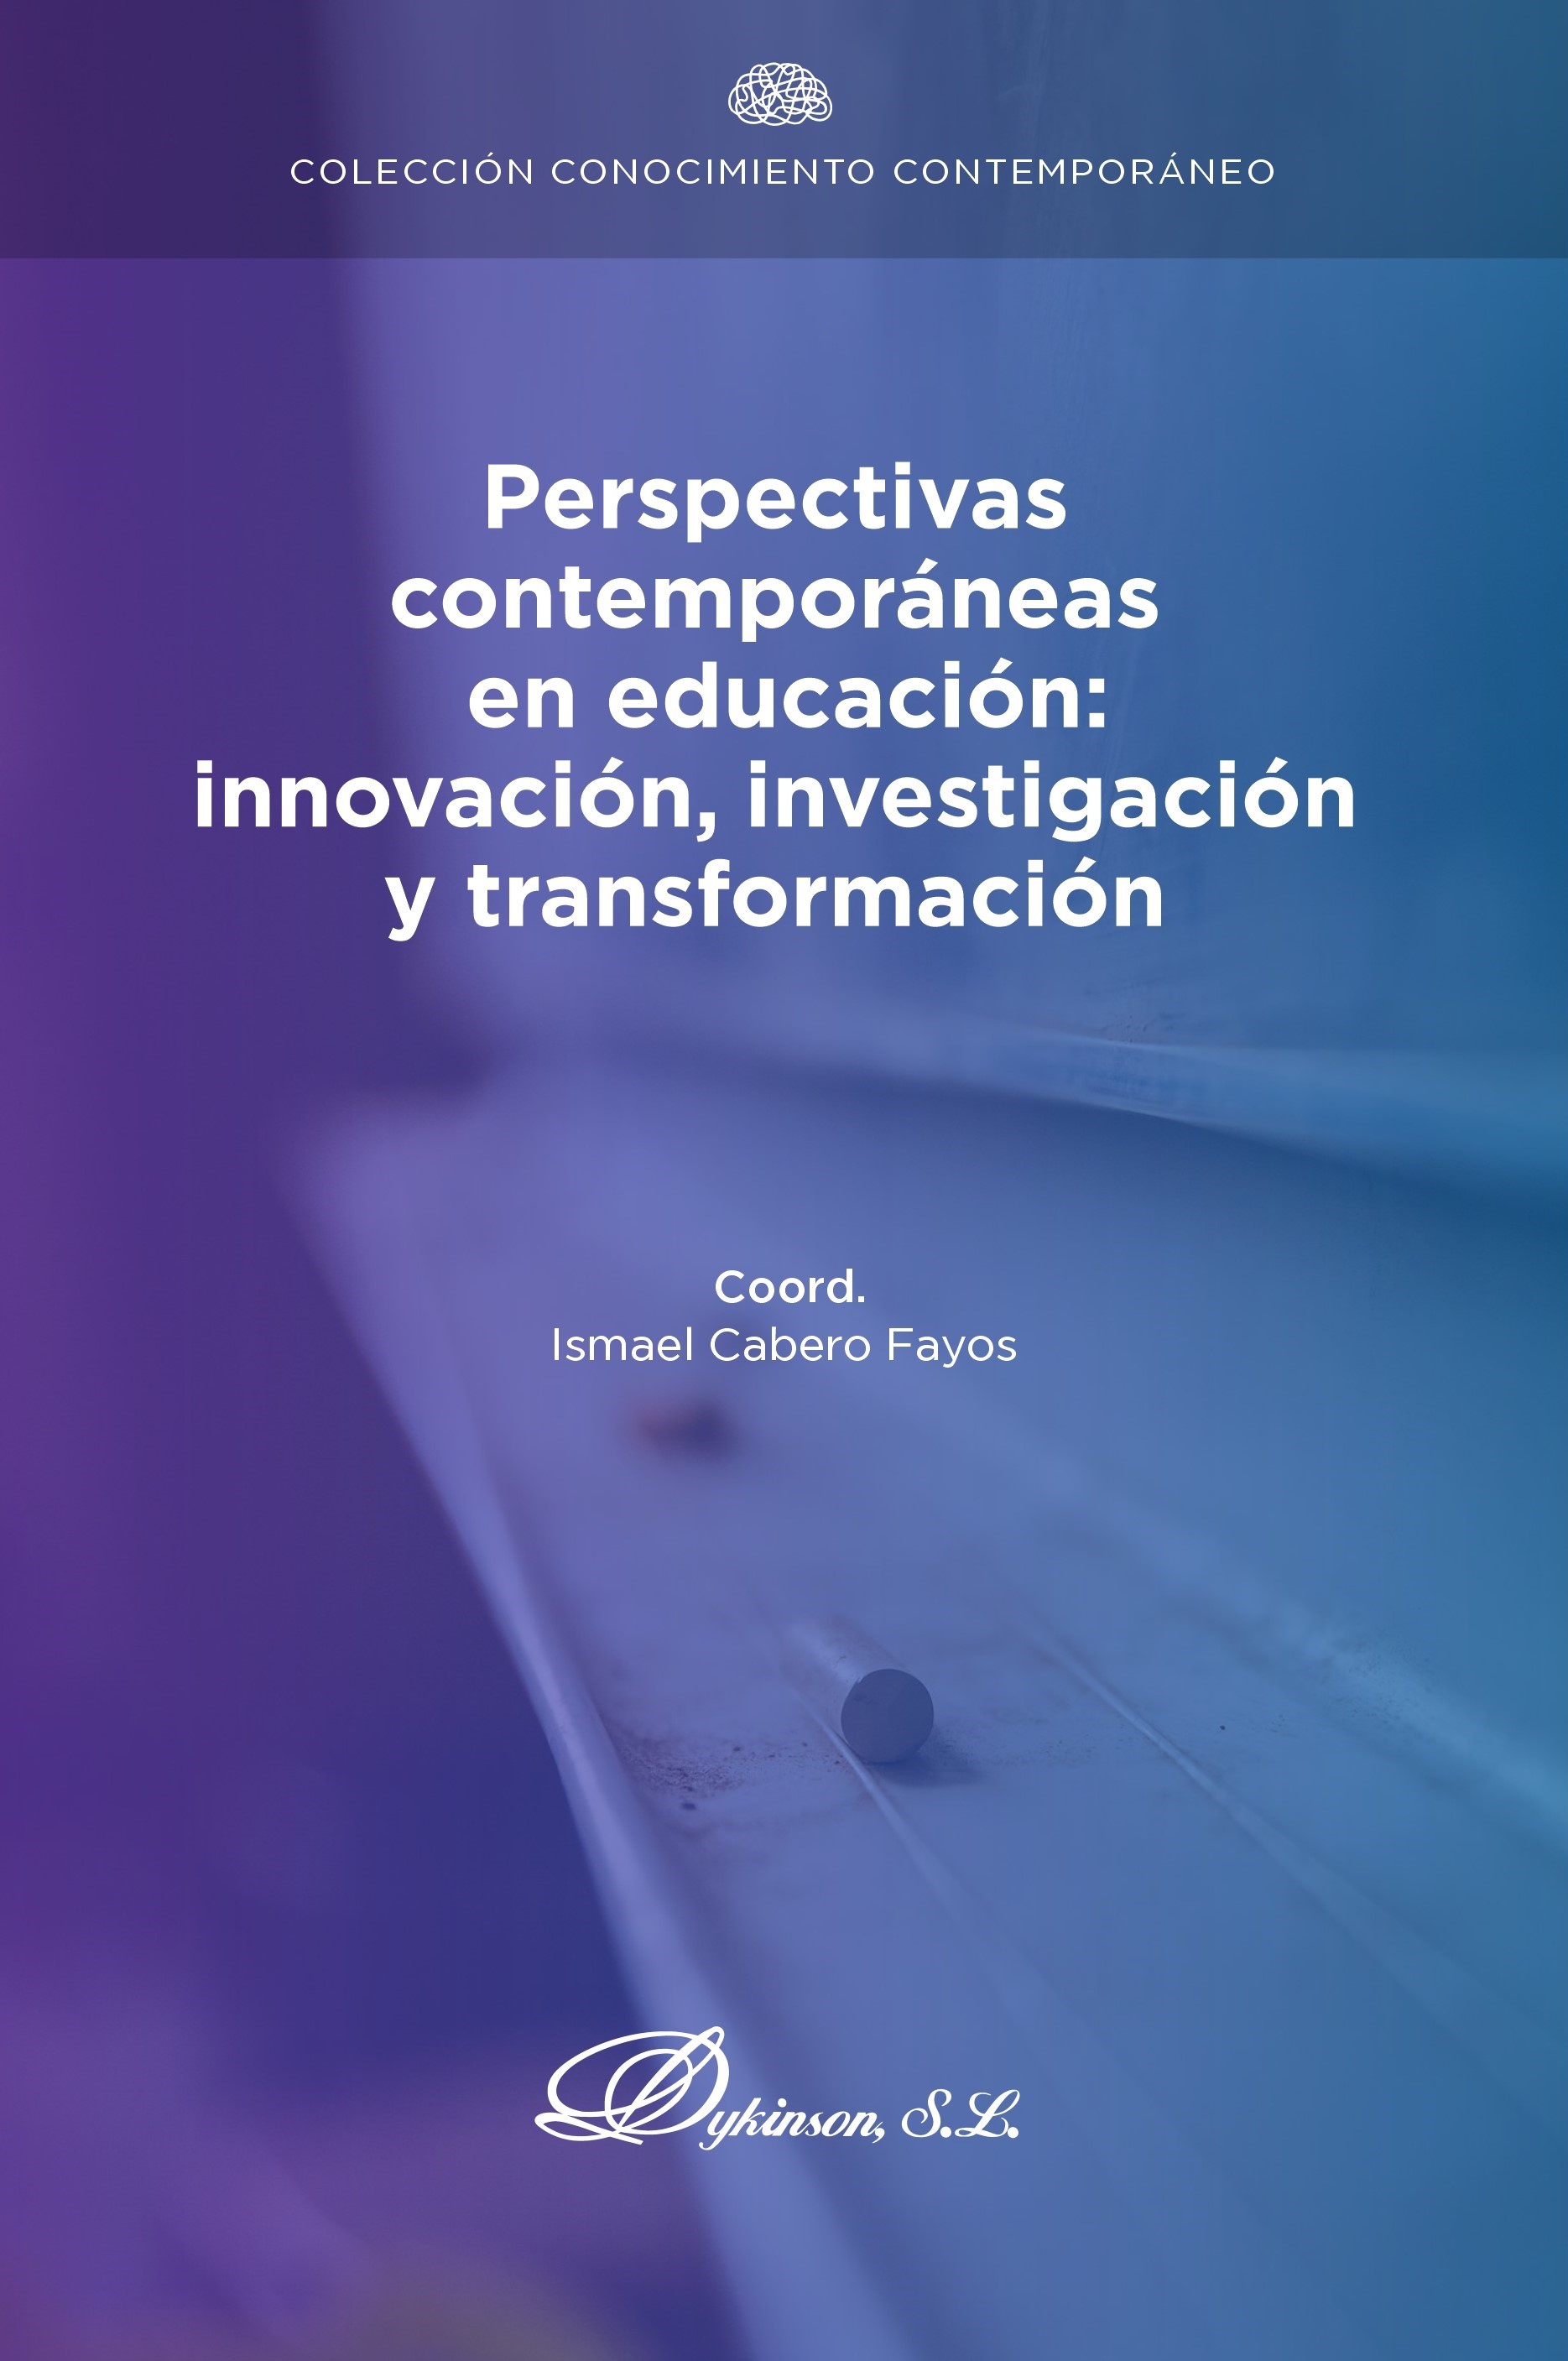 Imagen de portada del libro Perspectivas contemporáneas en educación